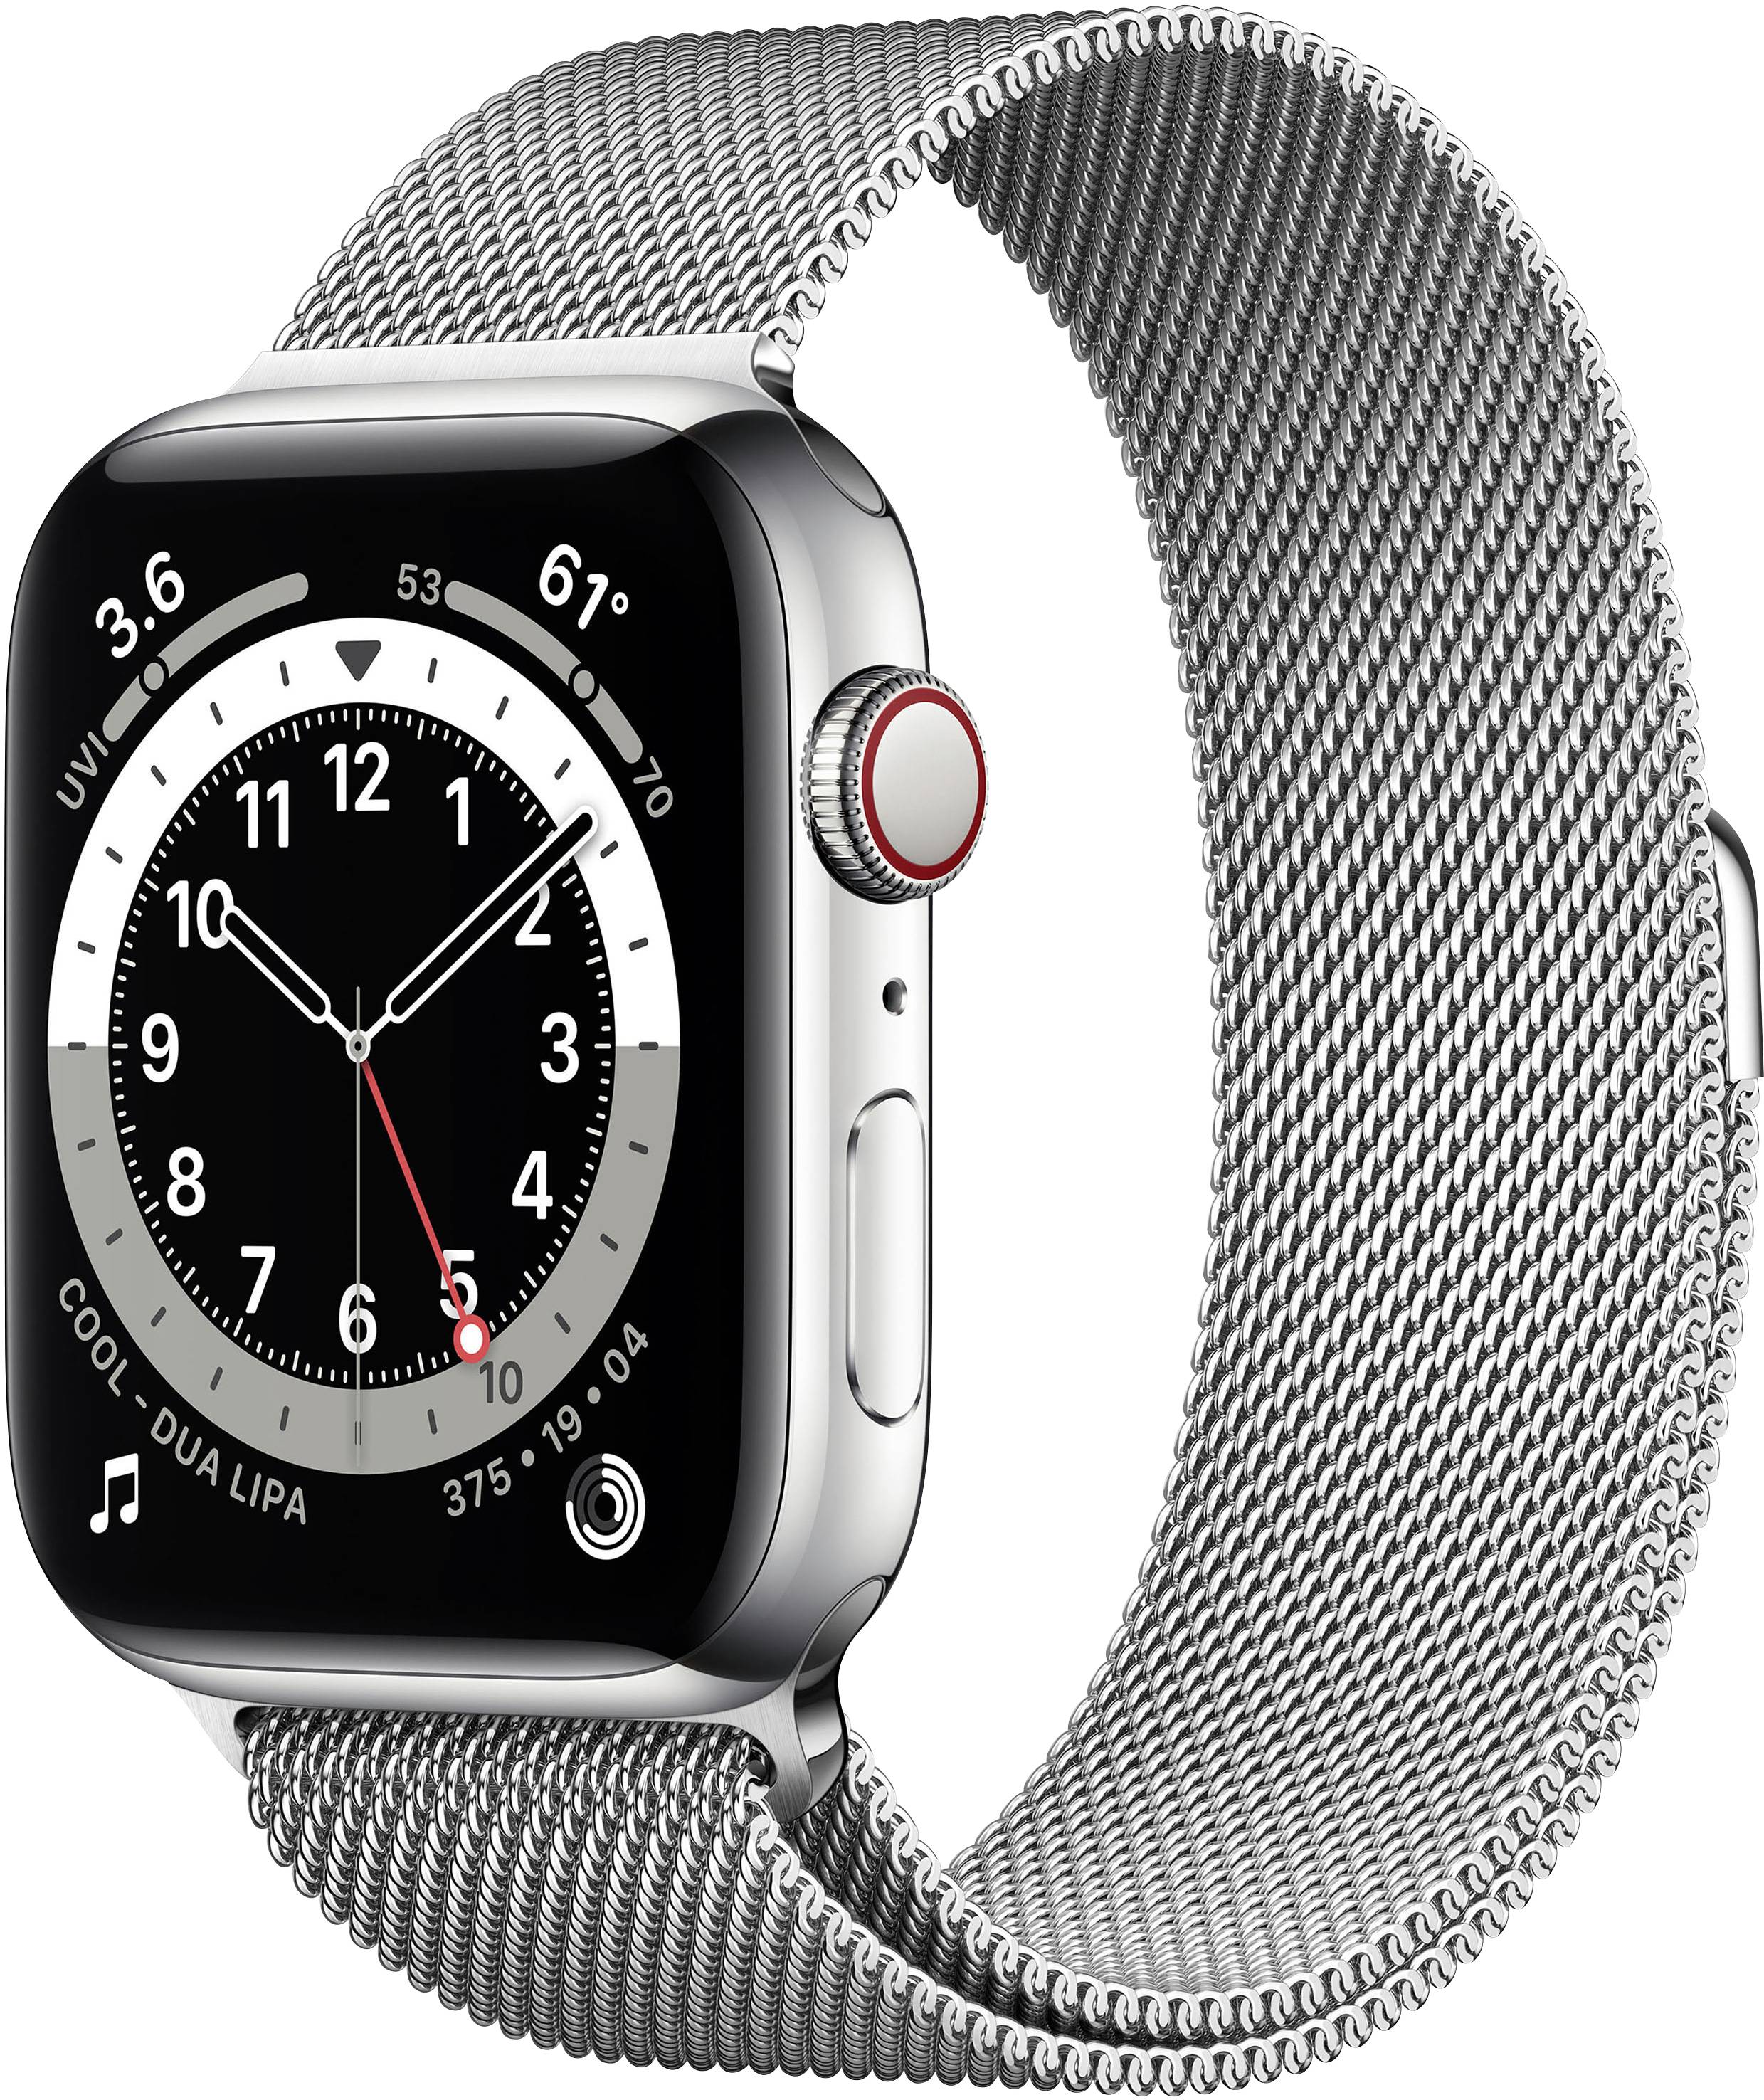 overzee Aan boord inflatie Apple Watch Series 6 GPS + Cellular 44 mm RVS kast Zilver Milanese band  Zilver | Conrad.nl